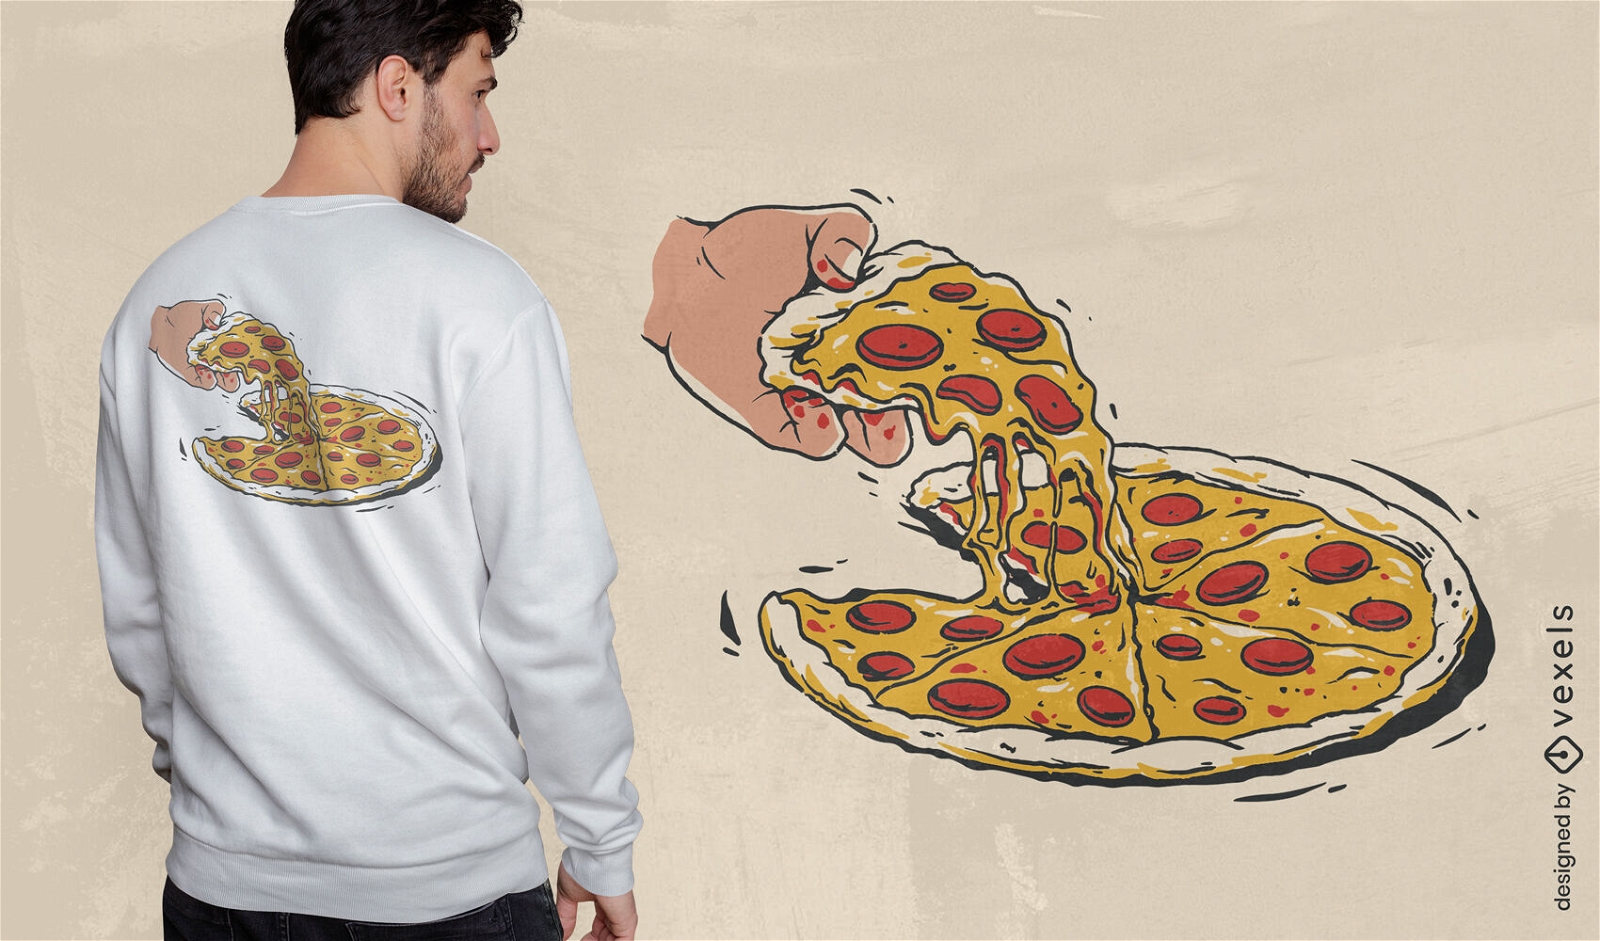 Rebanada de pizza con dise?o de camiseta de pepperoni